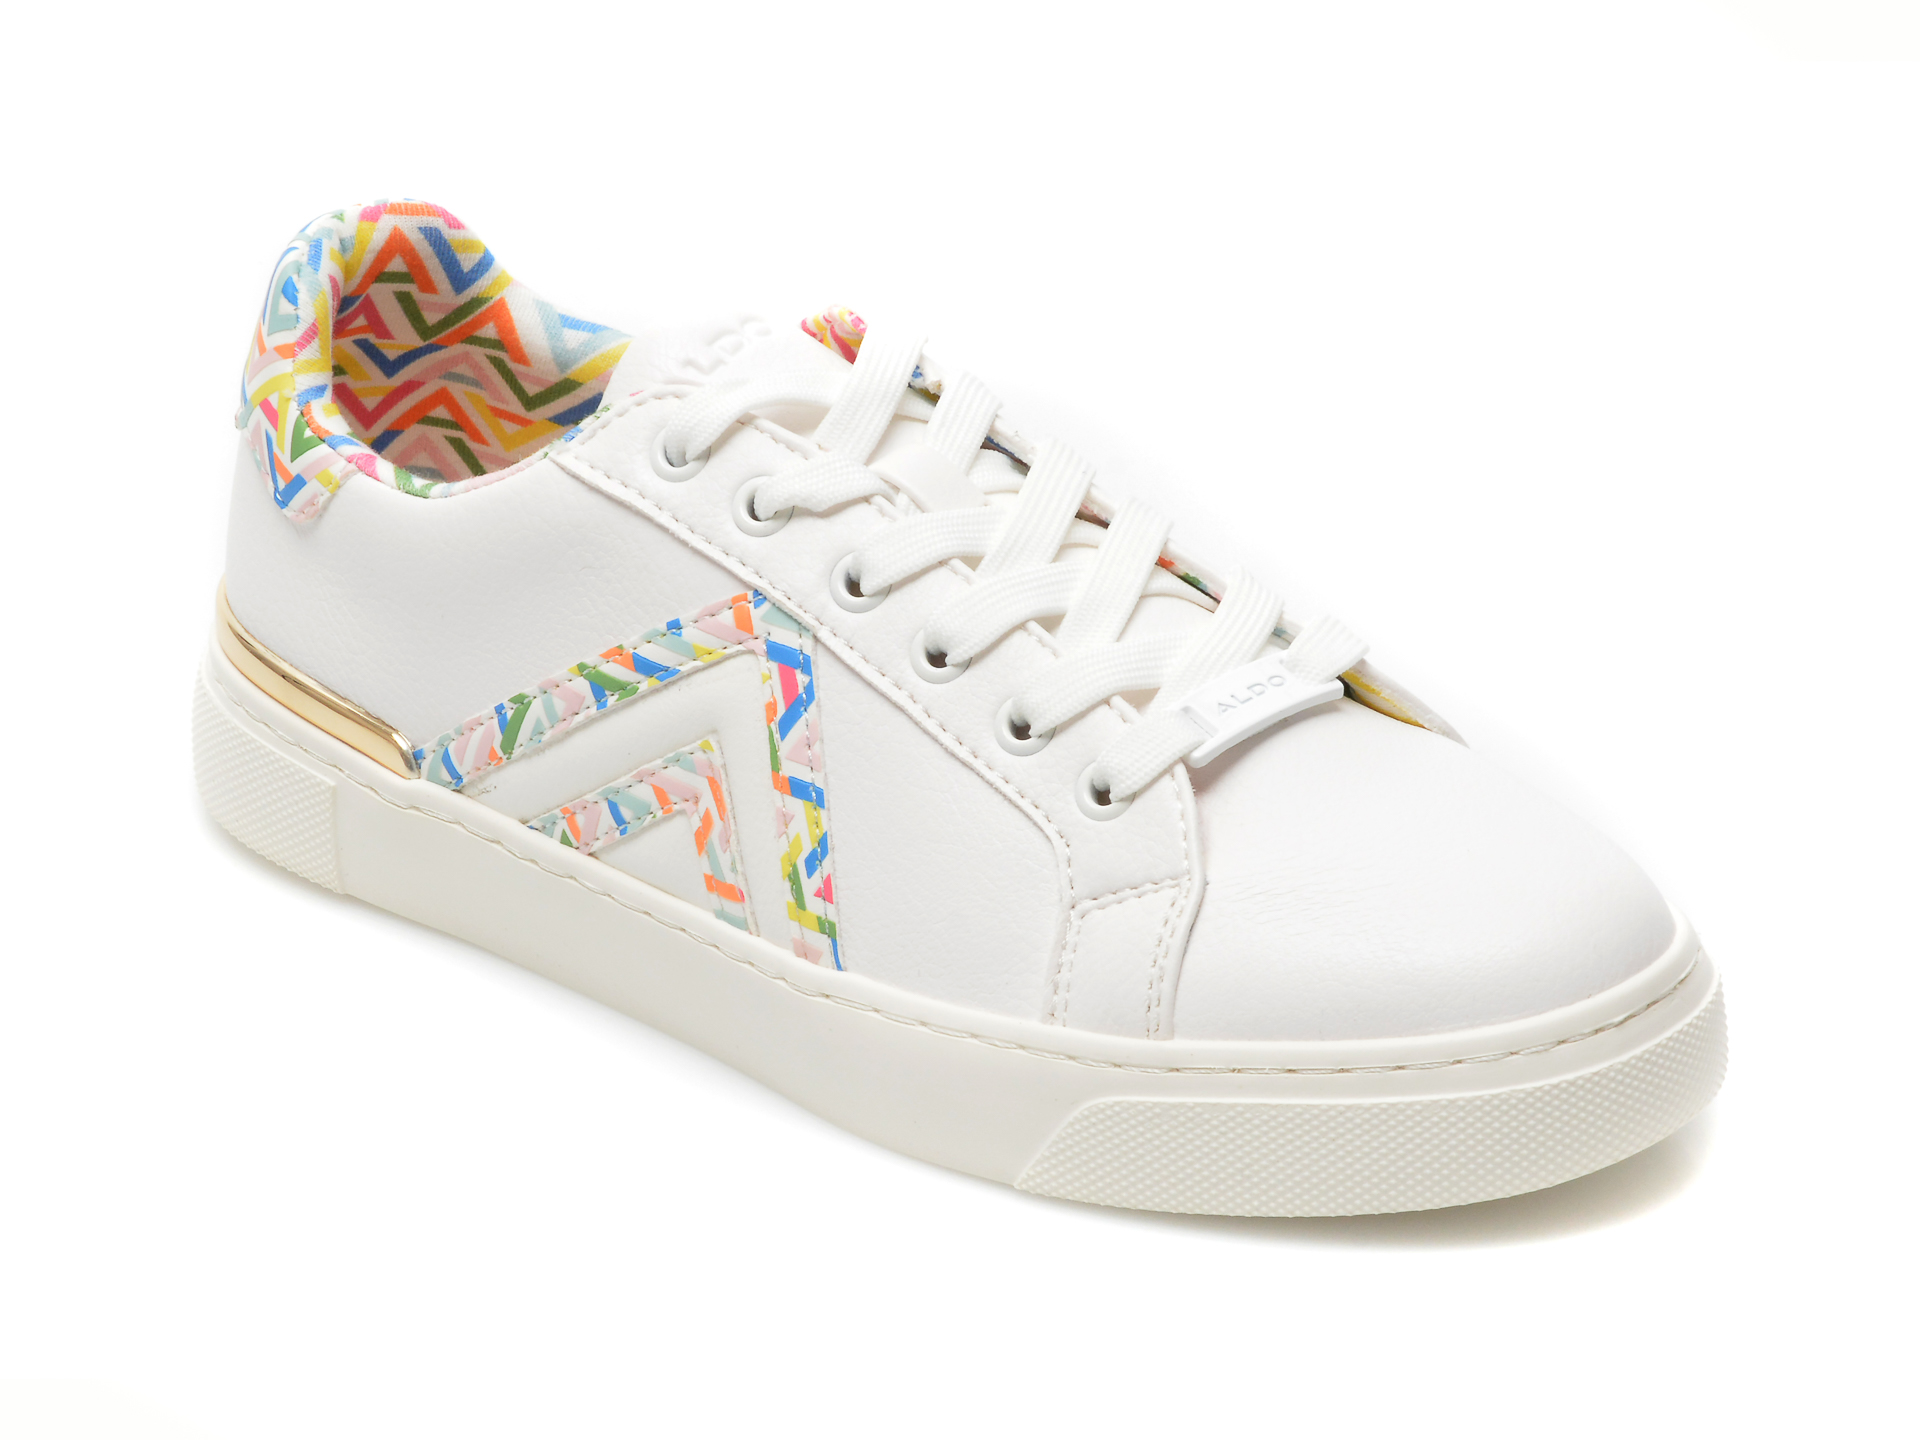 Pantofi ALDO albi, FRAN965, din piele ecologica Aldo imagine reduceri